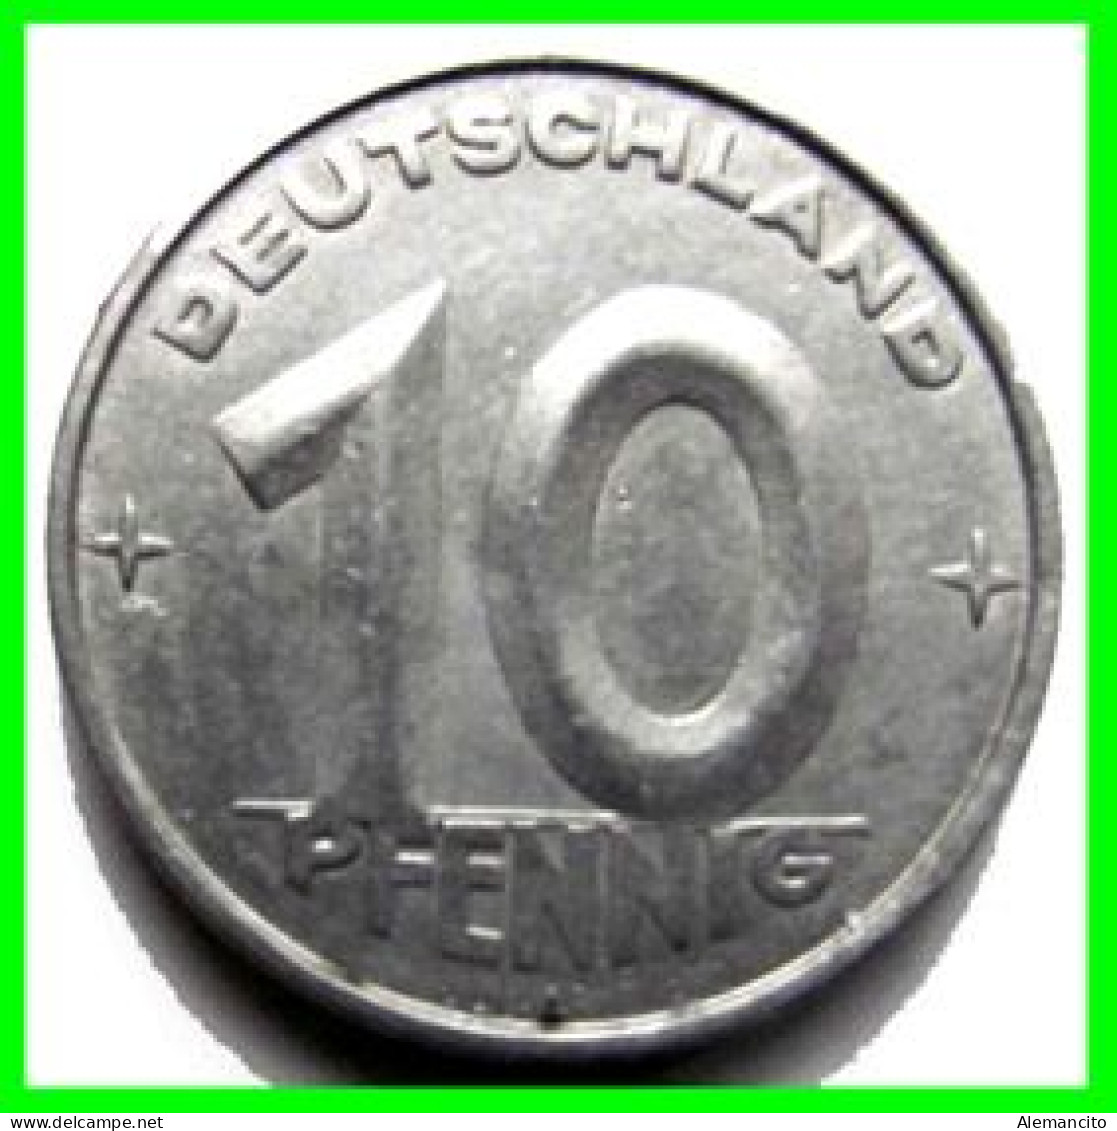 REPUBLICA DEMOCRATICA DE ALEMANIA ( DDR )  MONEDA DE 10 PFENNING AÑO - 1952 - CECA - E - MONEDA DE ALUMINIO CIRCULADA - 10 Pfennig